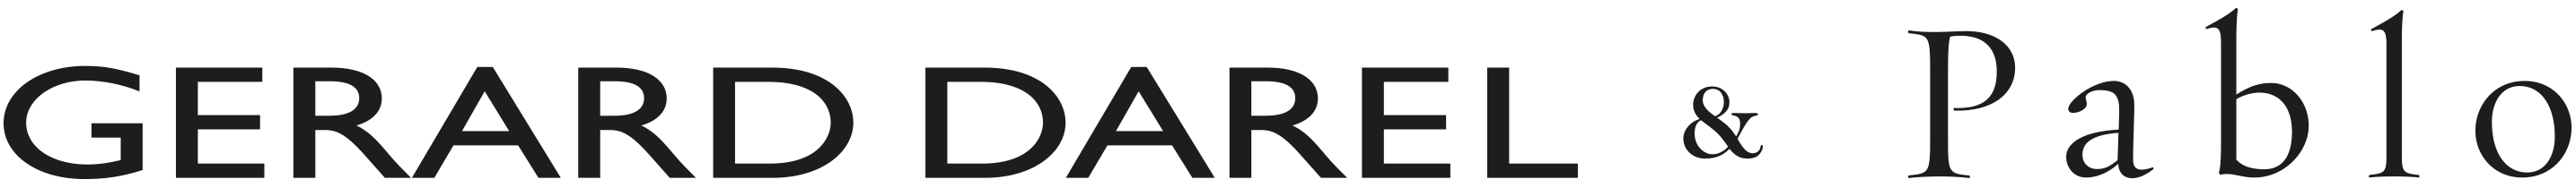 gerard darel logo